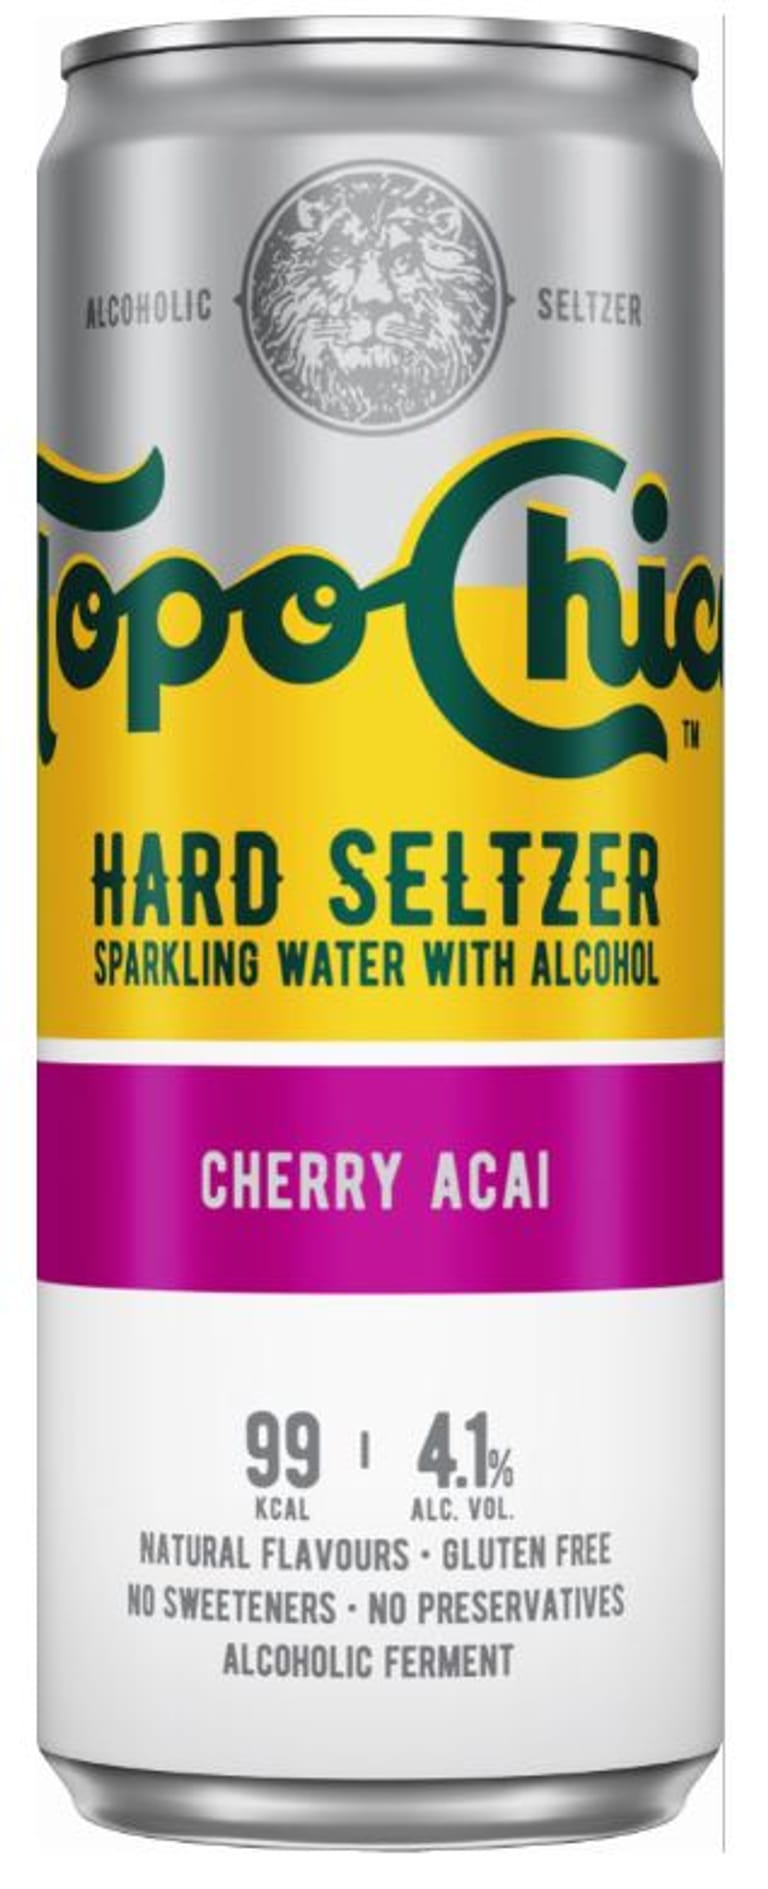 Neues Getränk von Coca-Cola: Topo Chico Hard Seltzer wird es in verschiedenen Sorten geben.